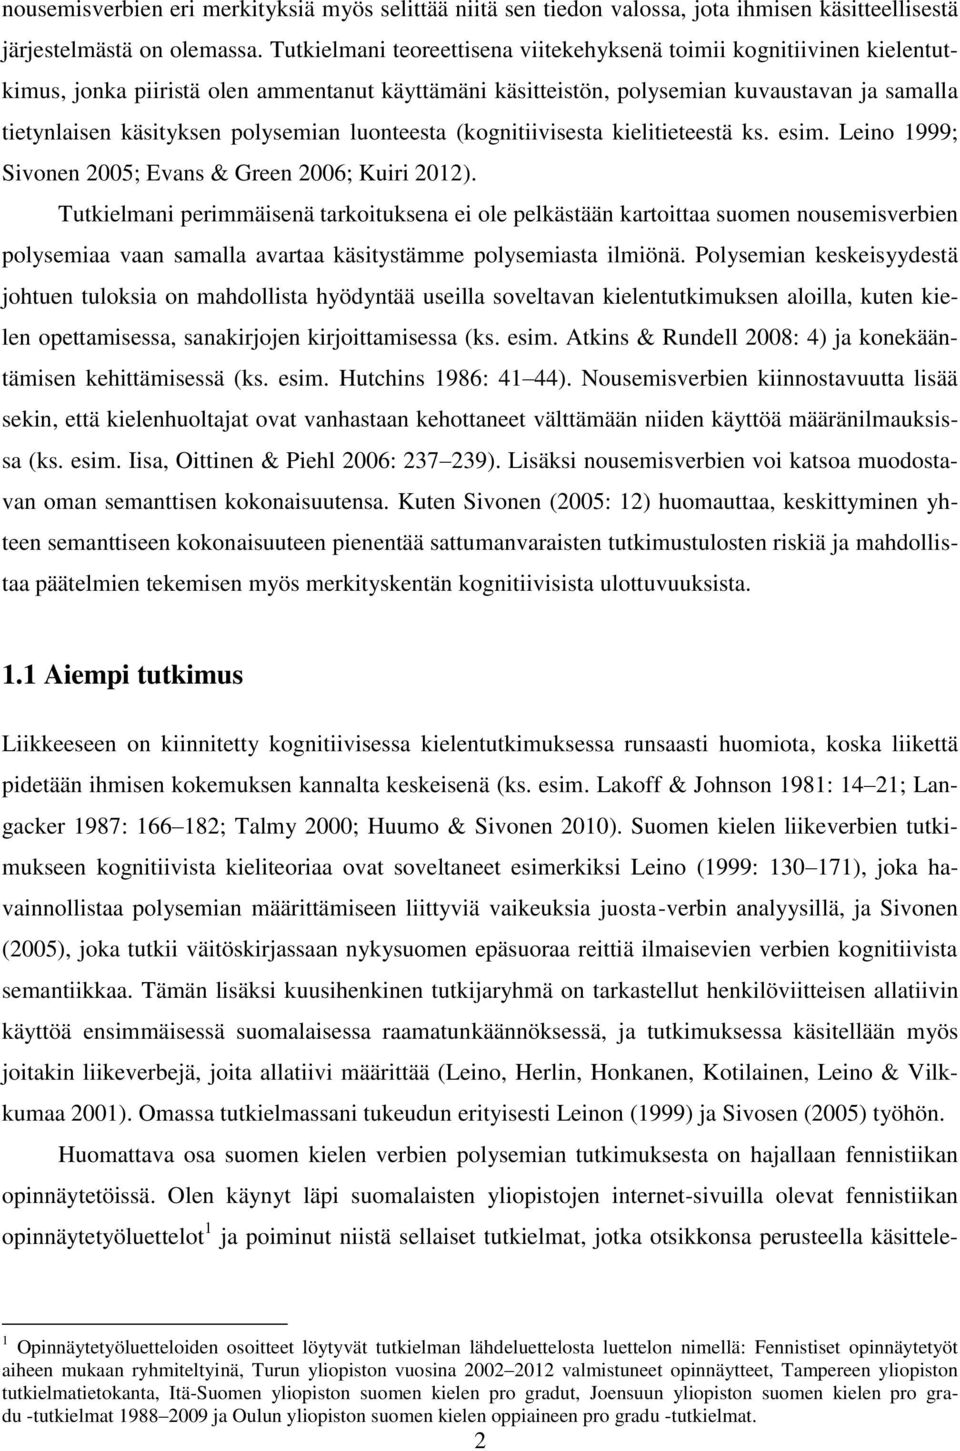 polysemian luonteesta (kognitiivisesta kielitieteestä ks. esim. Leino 1999; Sivonen 2005; Evans & Green 2006; Kuiri 2012).